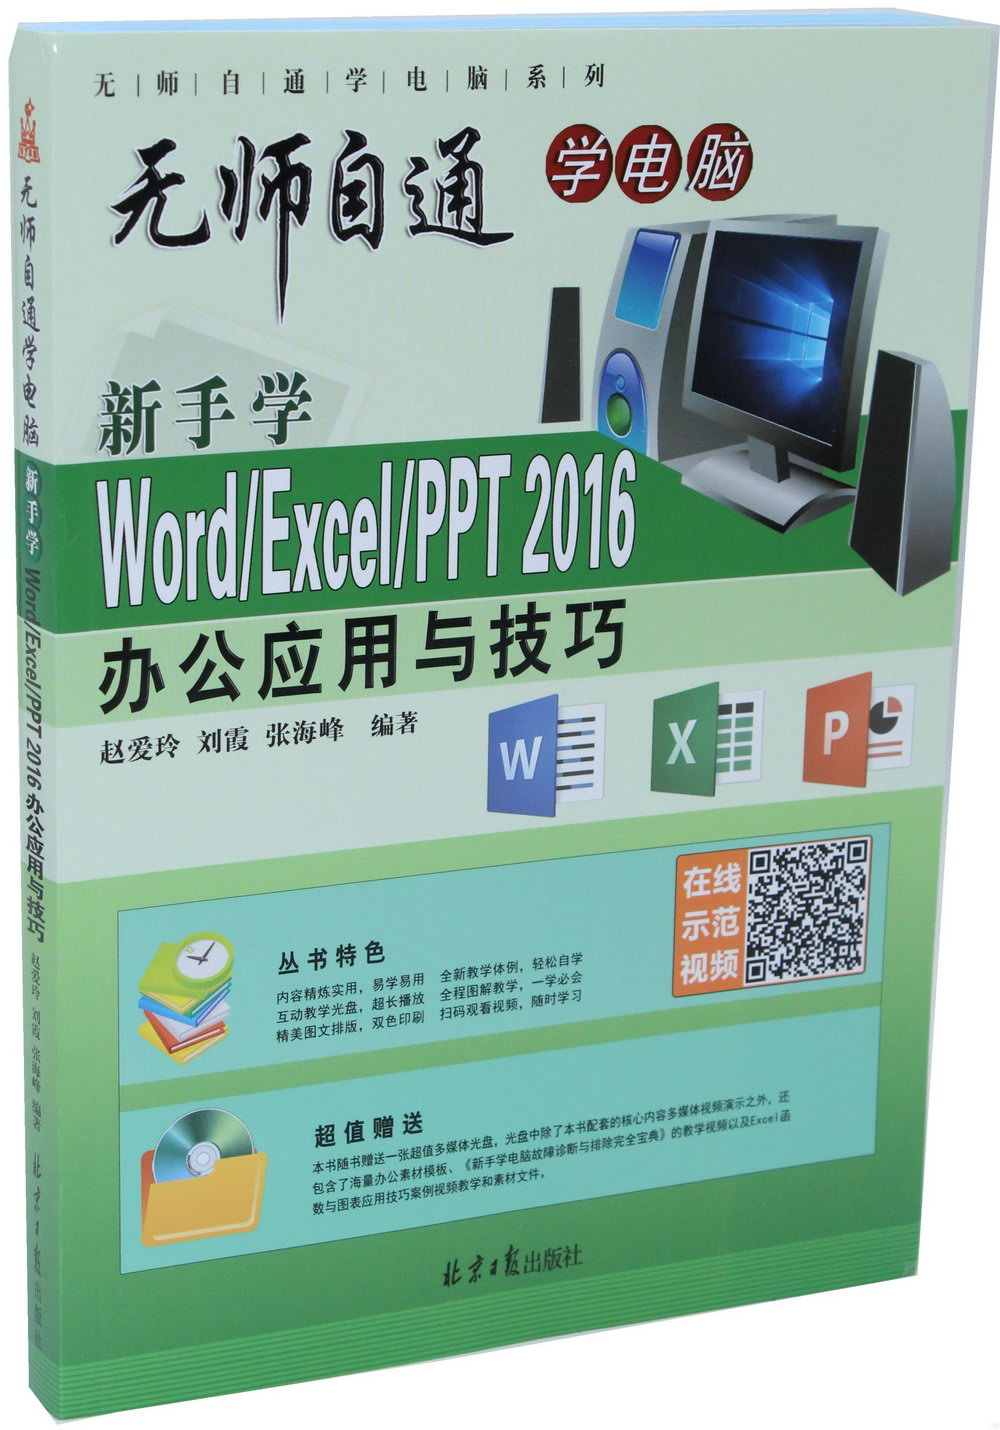 無師自通學電腦：新手學Word/Excel/PPT 2016辦公應用與技巧